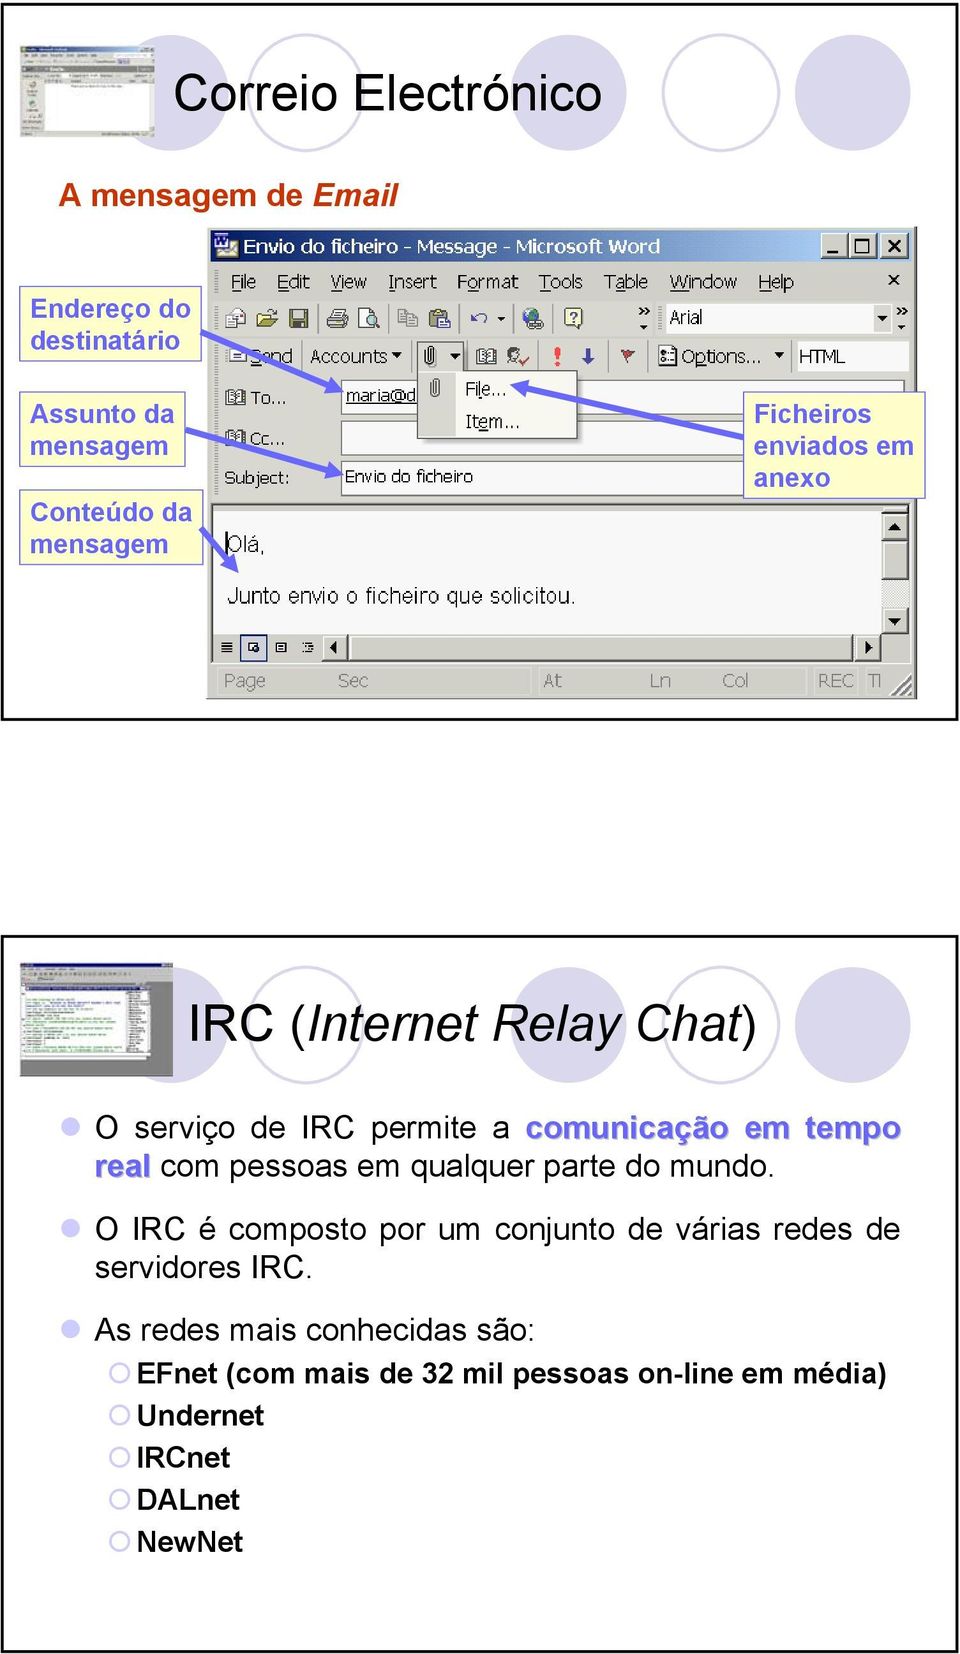 com pessoas em qualquer parte do mundo. O IRC é composto por um conjunto de várias redes de servidores IRC.